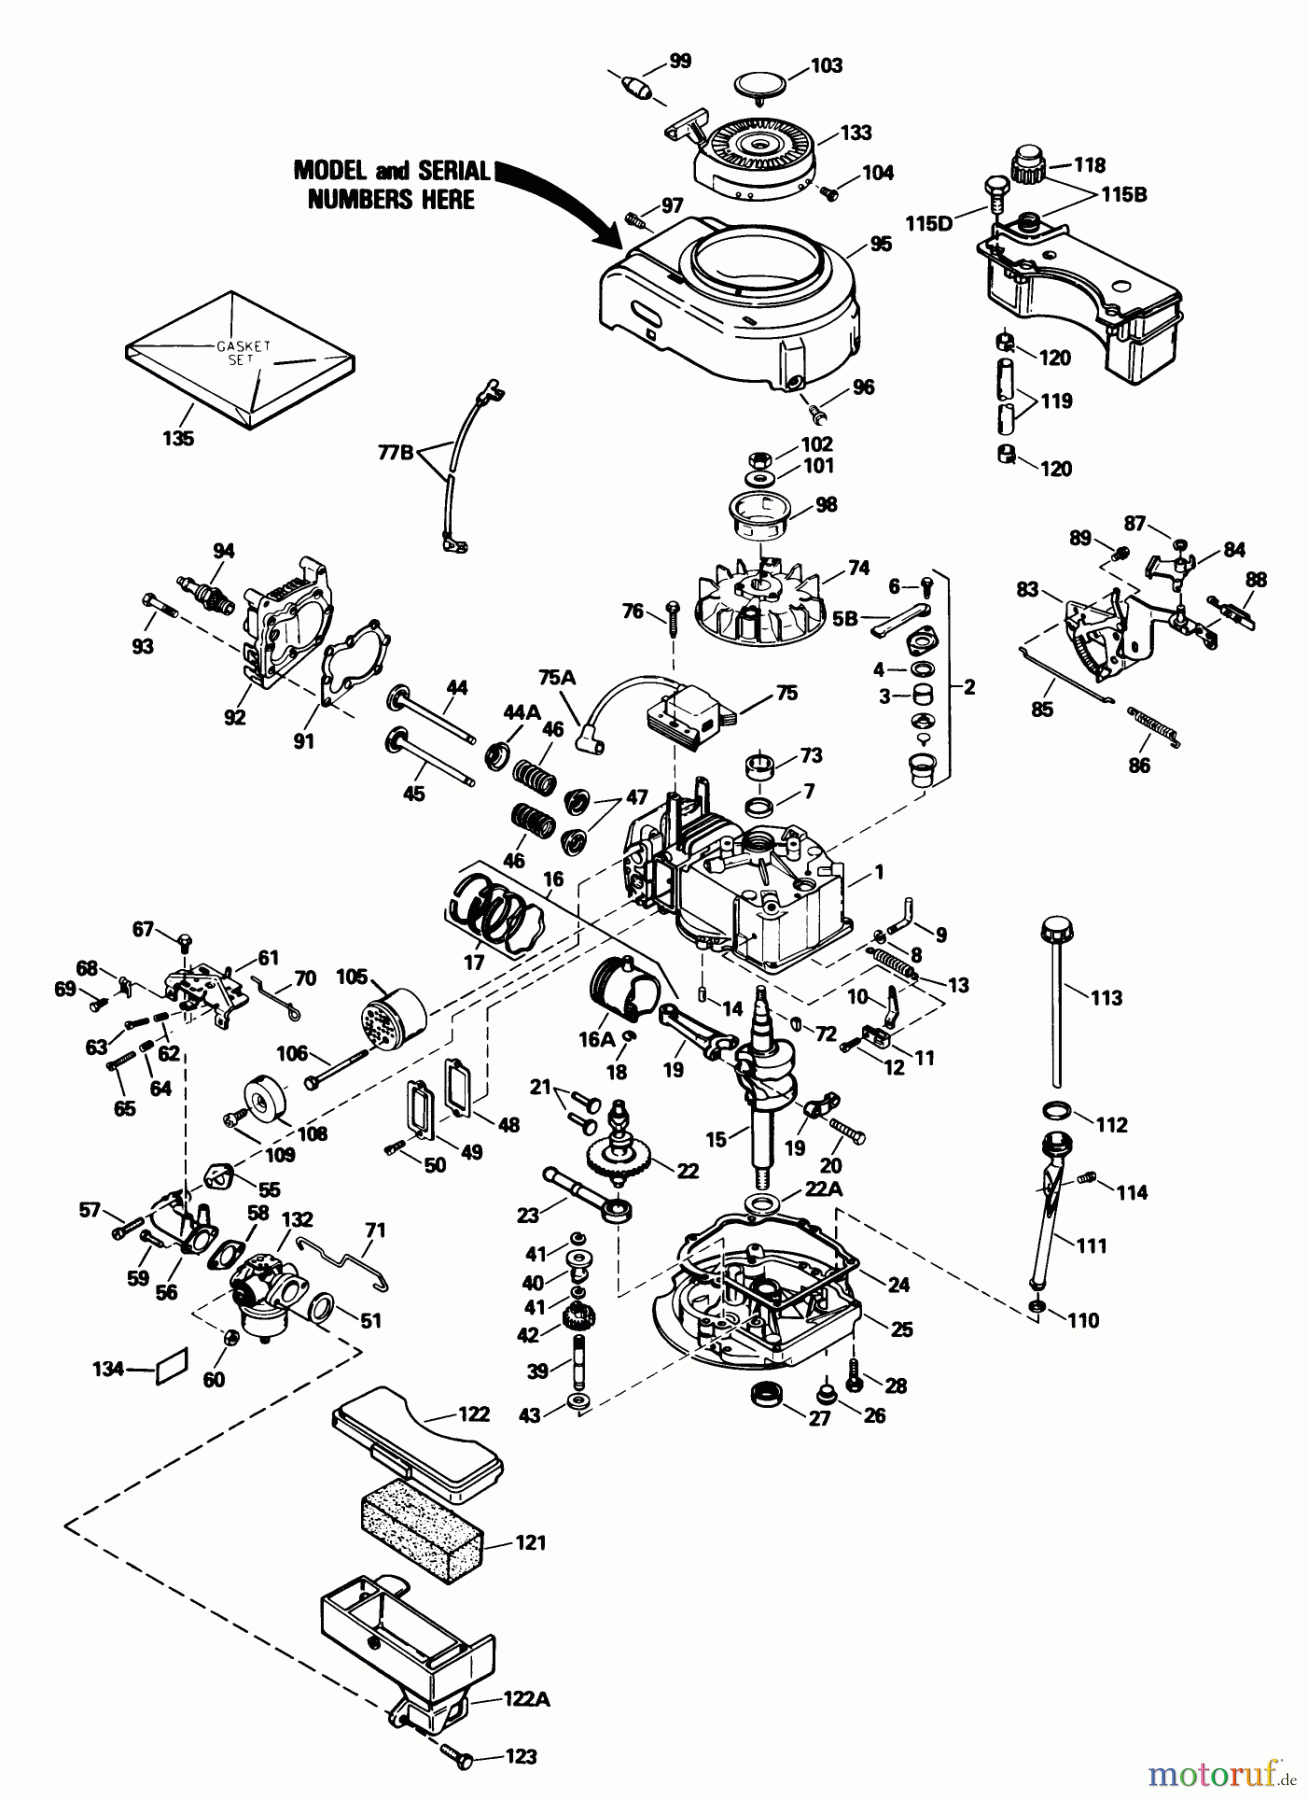  Toro Neu Mowers, Walk-Behind Seite 1 16575 - Toro Lawnmower, 1990 (0000001-0999999) ENGINE TECUMSEH MODEL NO. TVS100-44016B